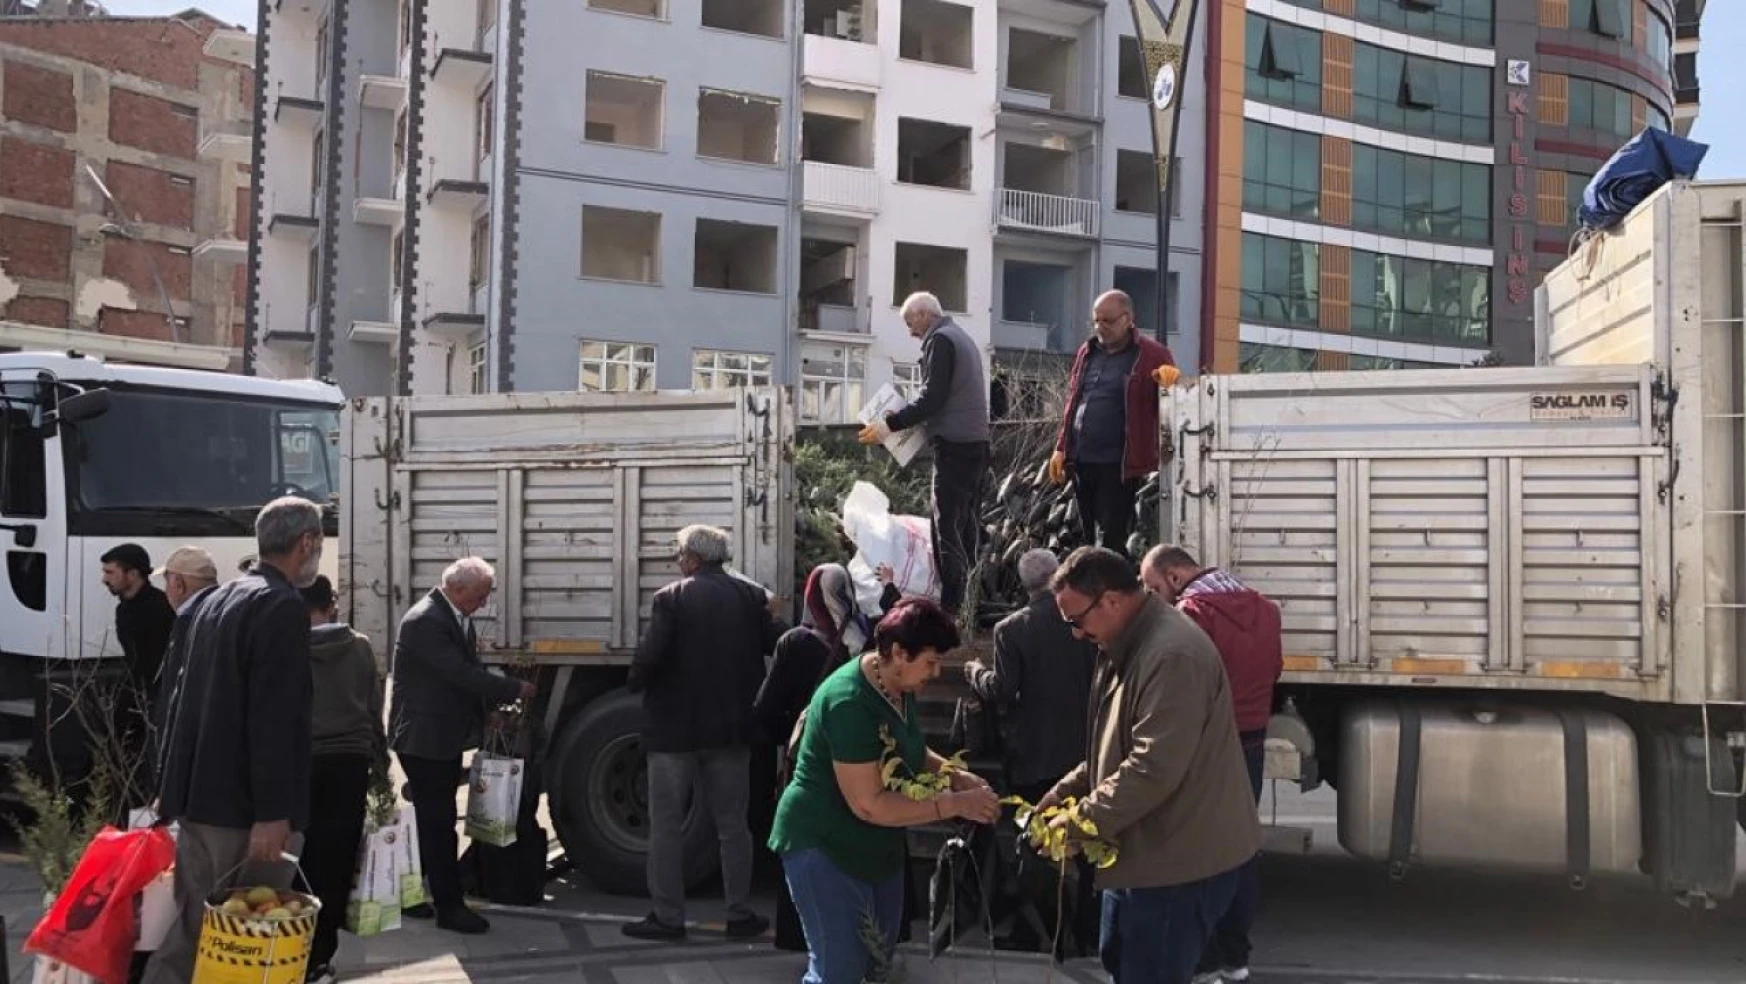 Elazığ'da vatandaşlara ücretiz fidan dağıtıldı